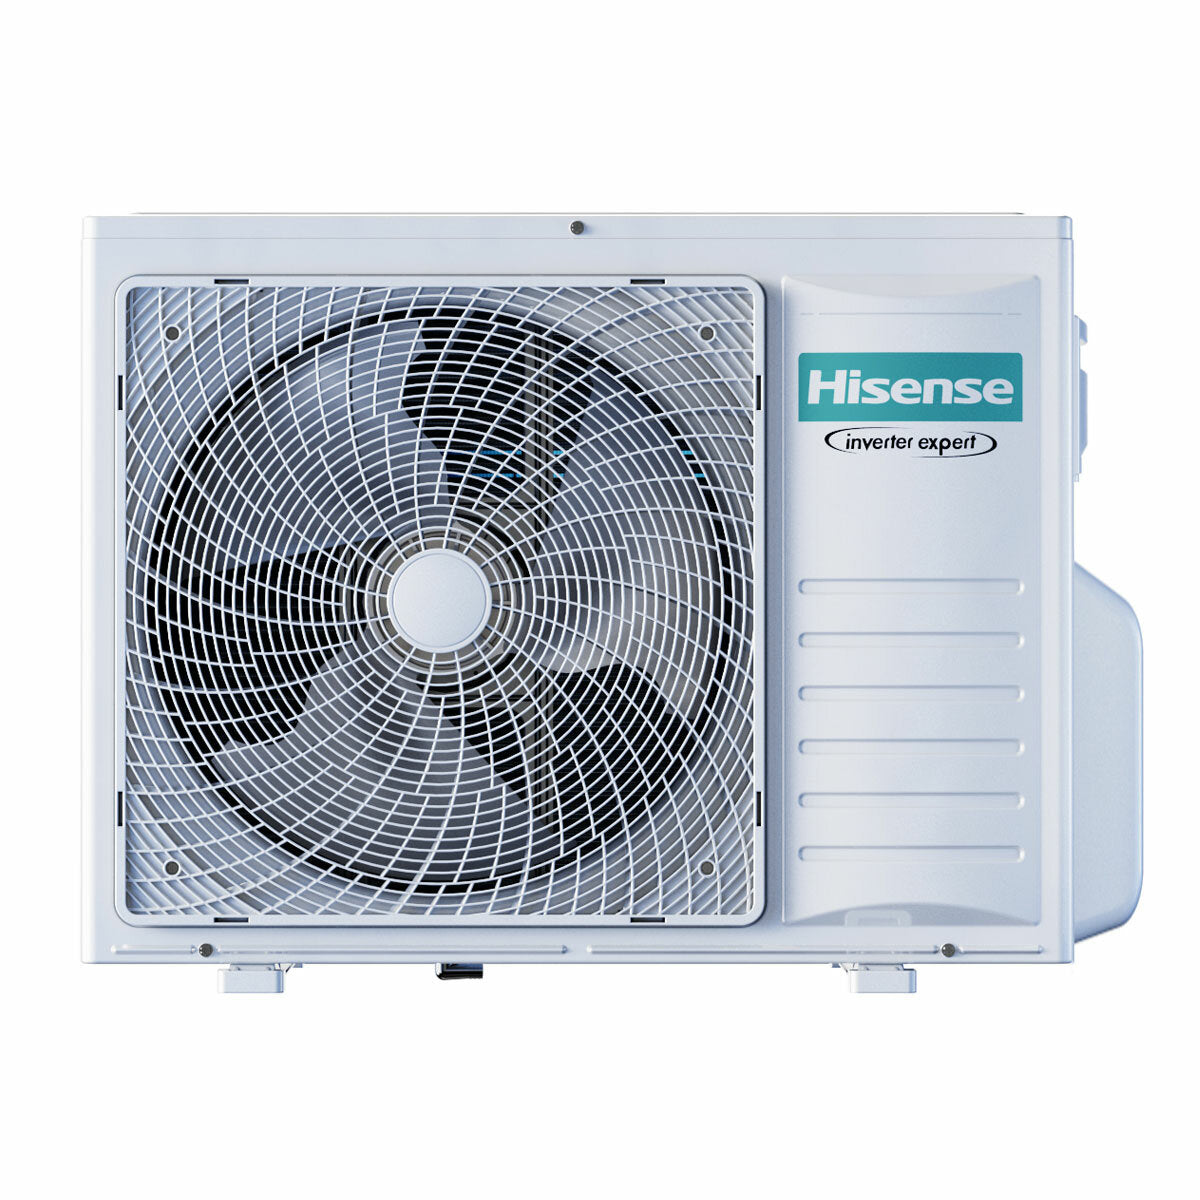 Hisense Hi-Comfort quadri split air conditioner 9000+9000+9000+9000 BTU inverter A++ wifi outdoor unit 8 kW